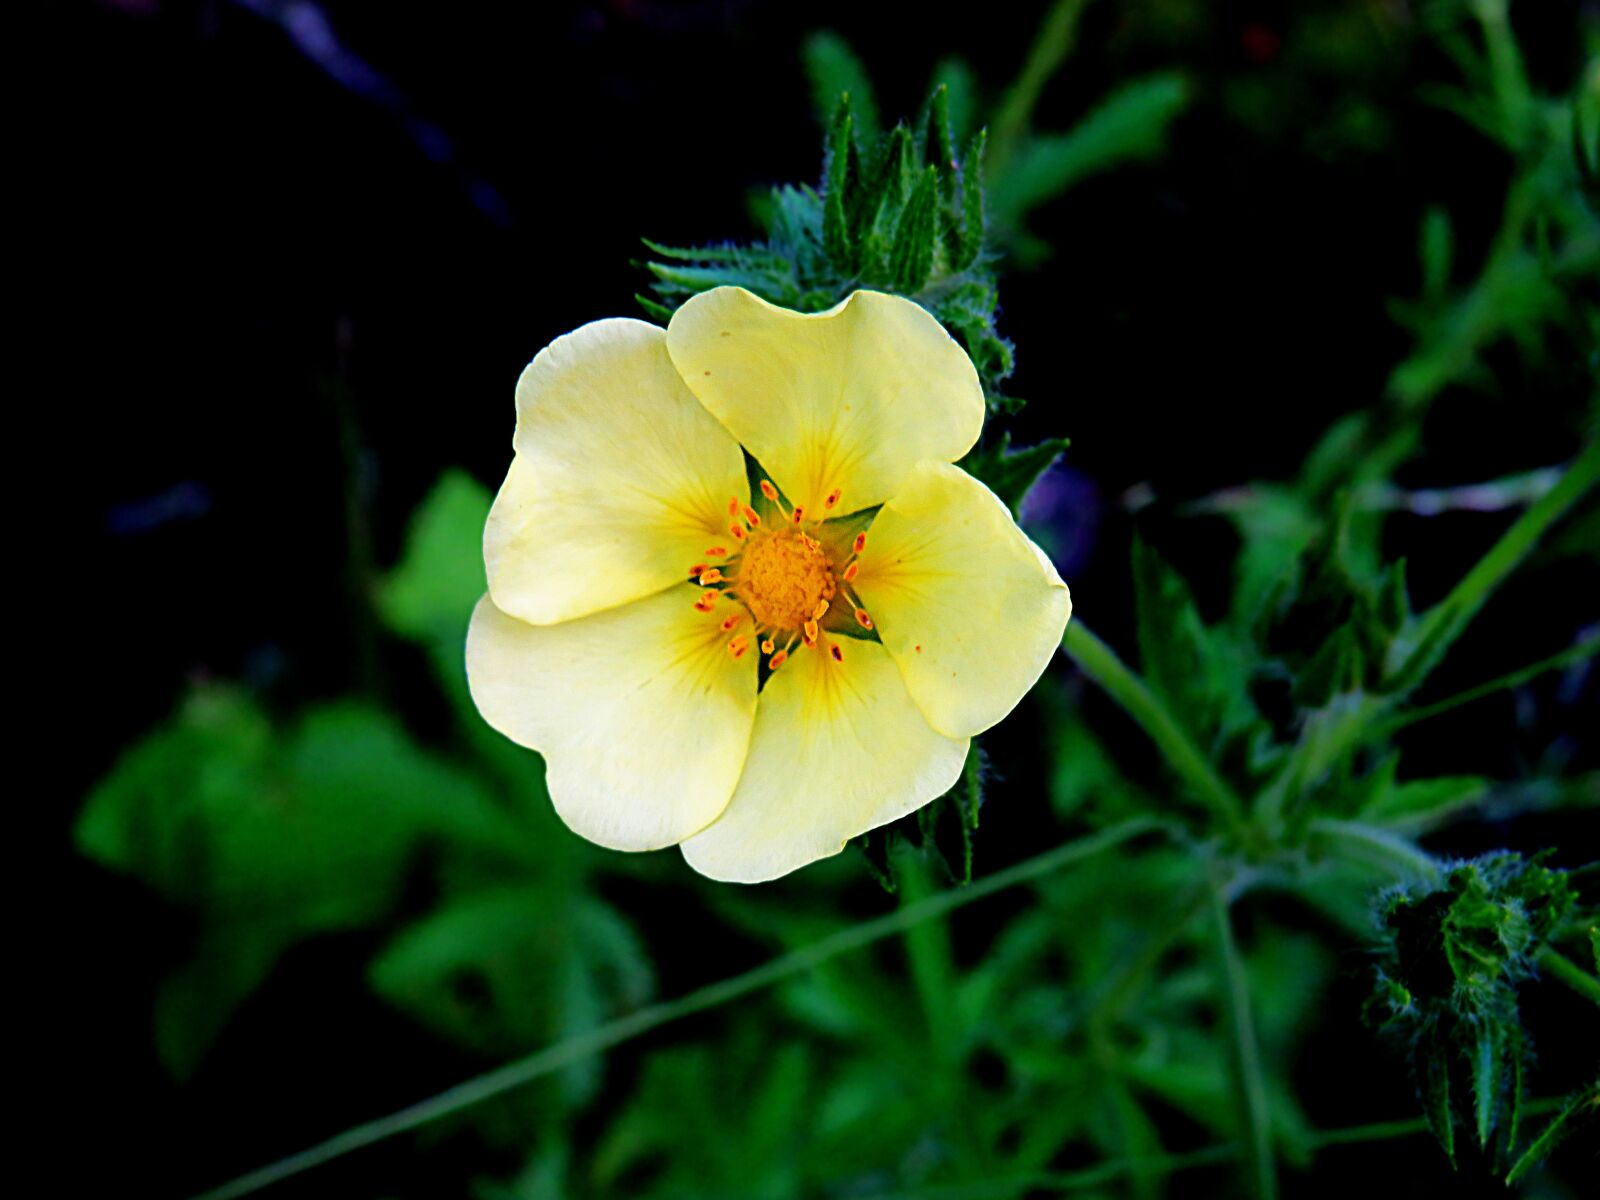 Canon PowerShot SX540 HS sample photo. Flower, petals, nature photography